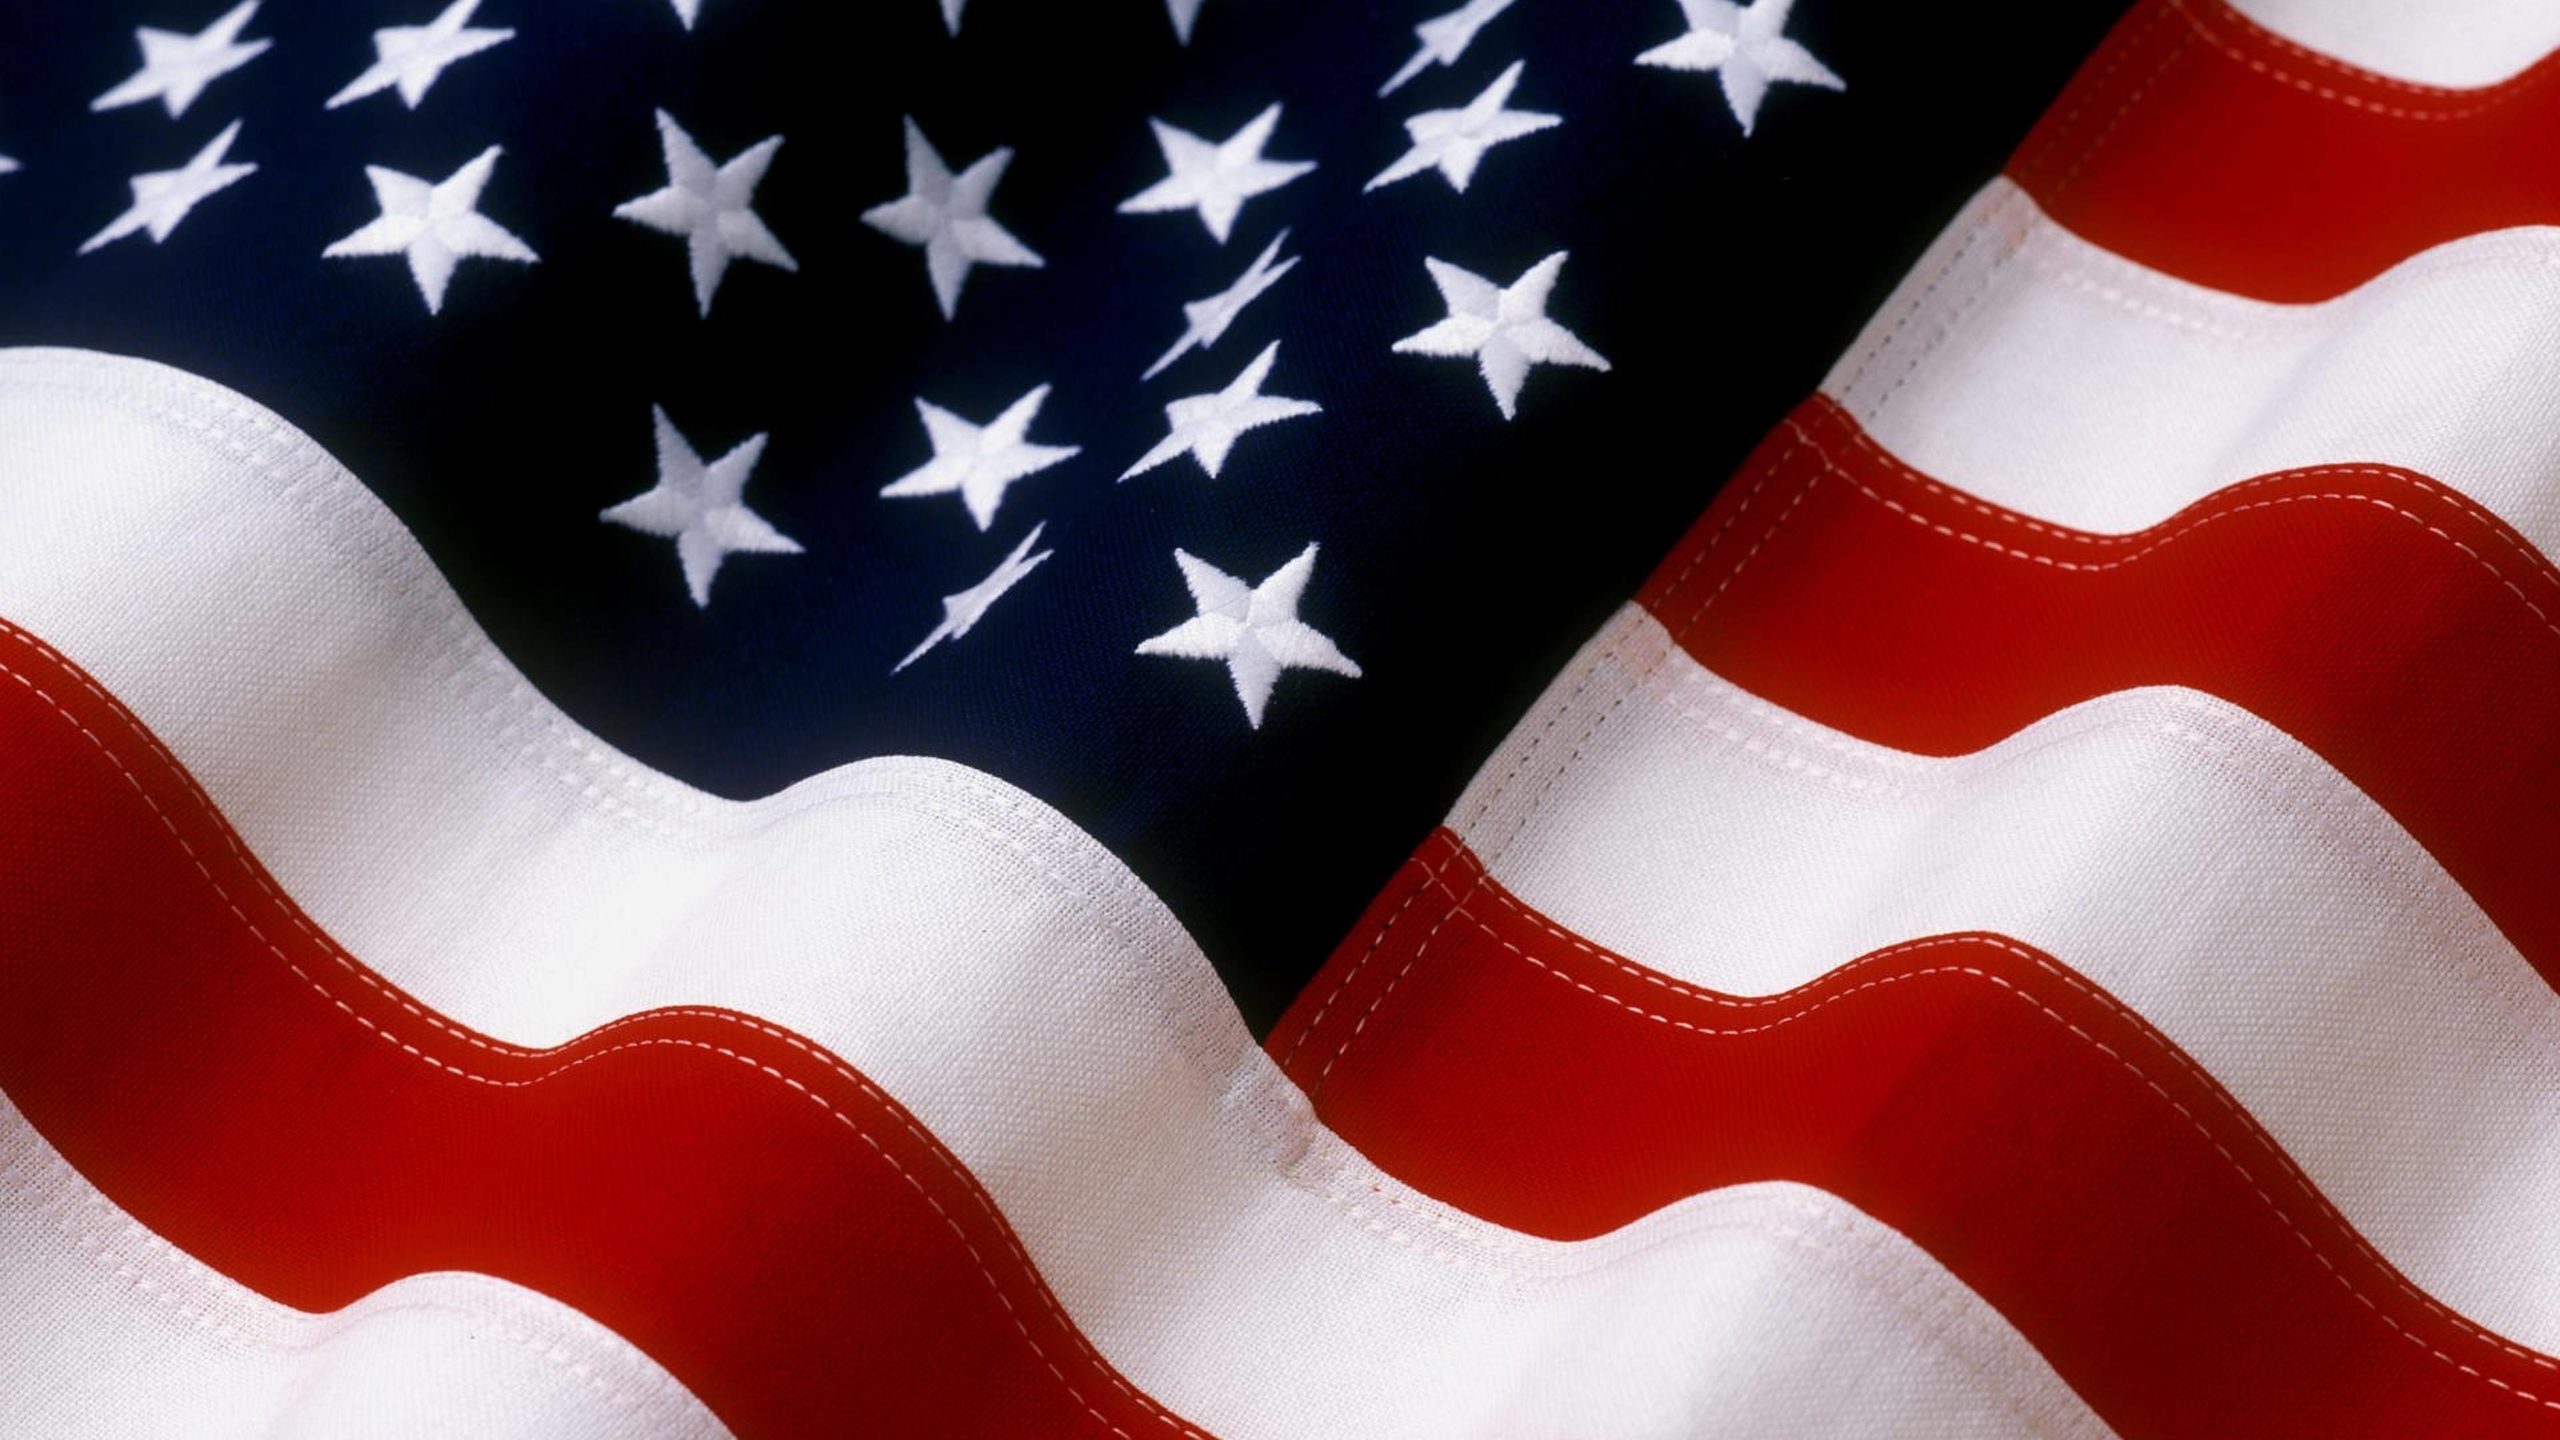 american flag desktop wallpaper